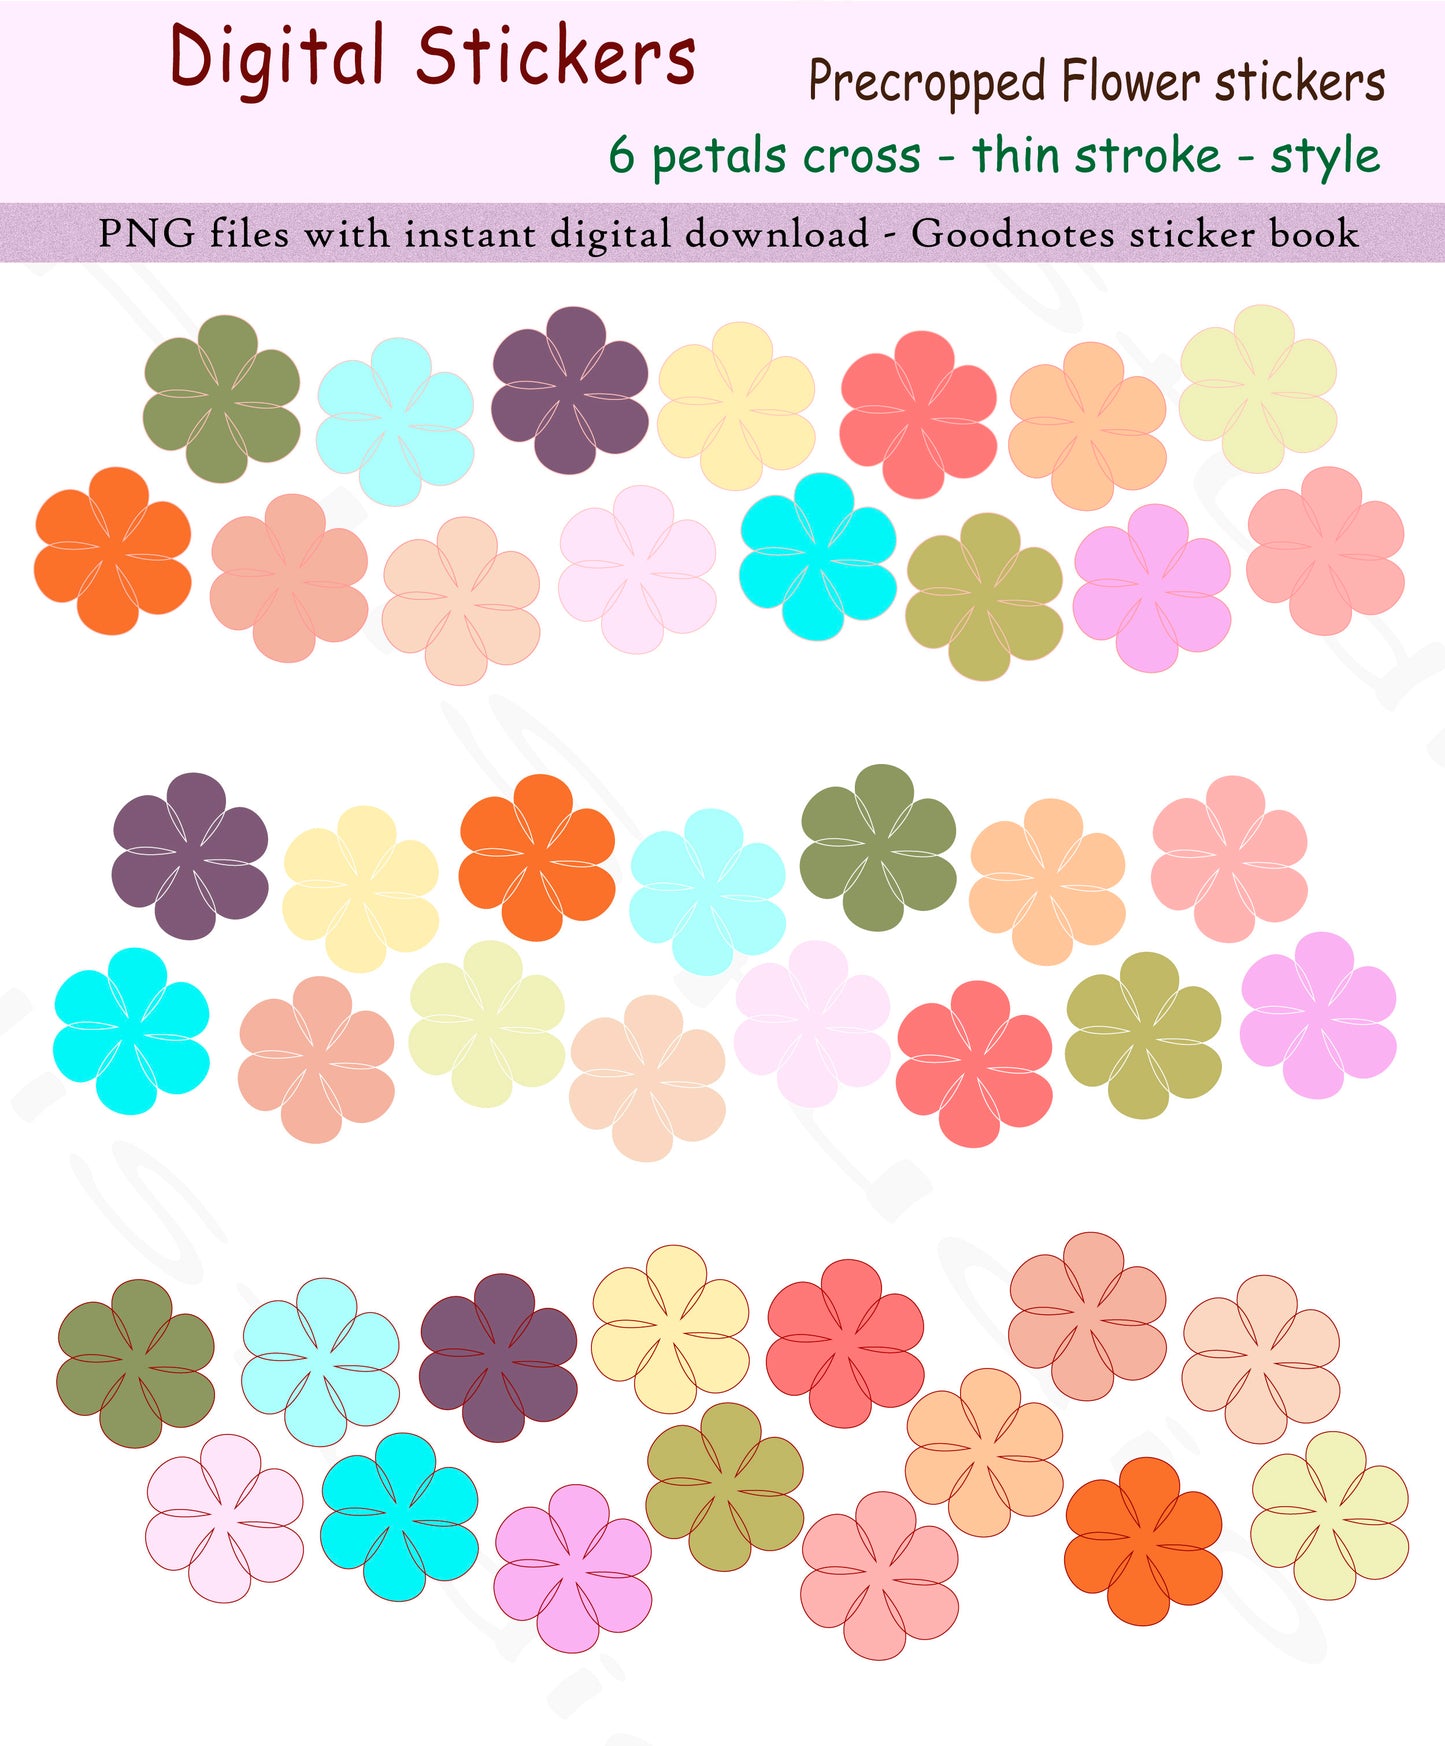 400+ Flowers | 9 styles | 3 strokes - Digital sticker